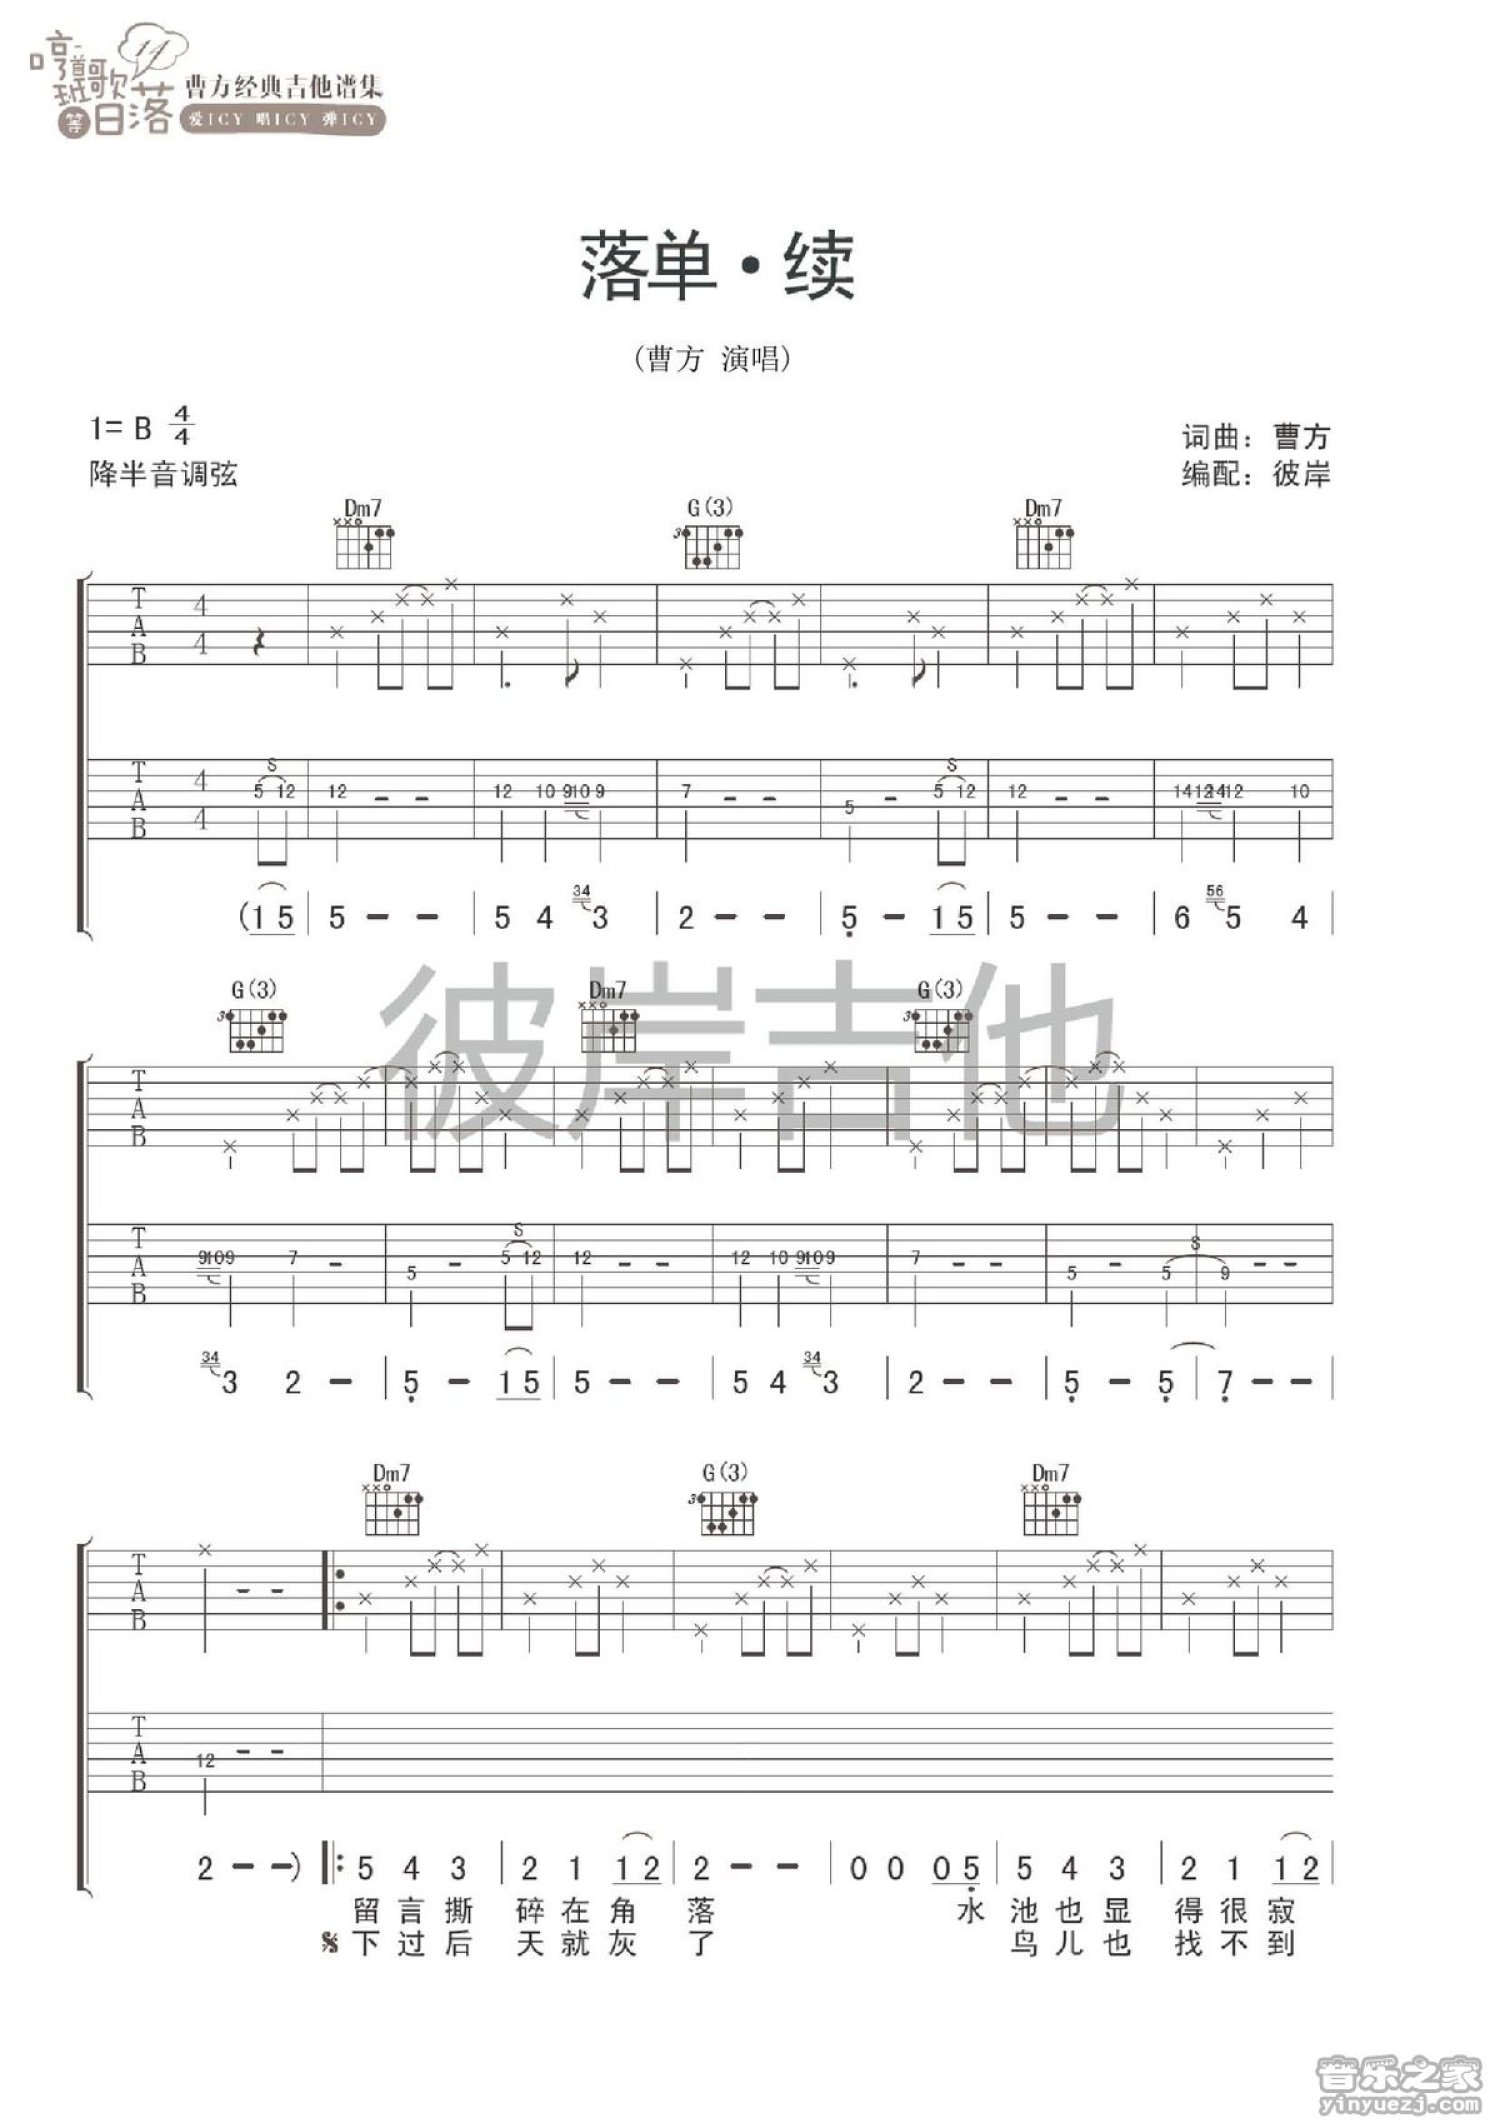 【吉他谱】《珊瑚》- 曹方新专辑《流浪癖》 – 飞啦不休